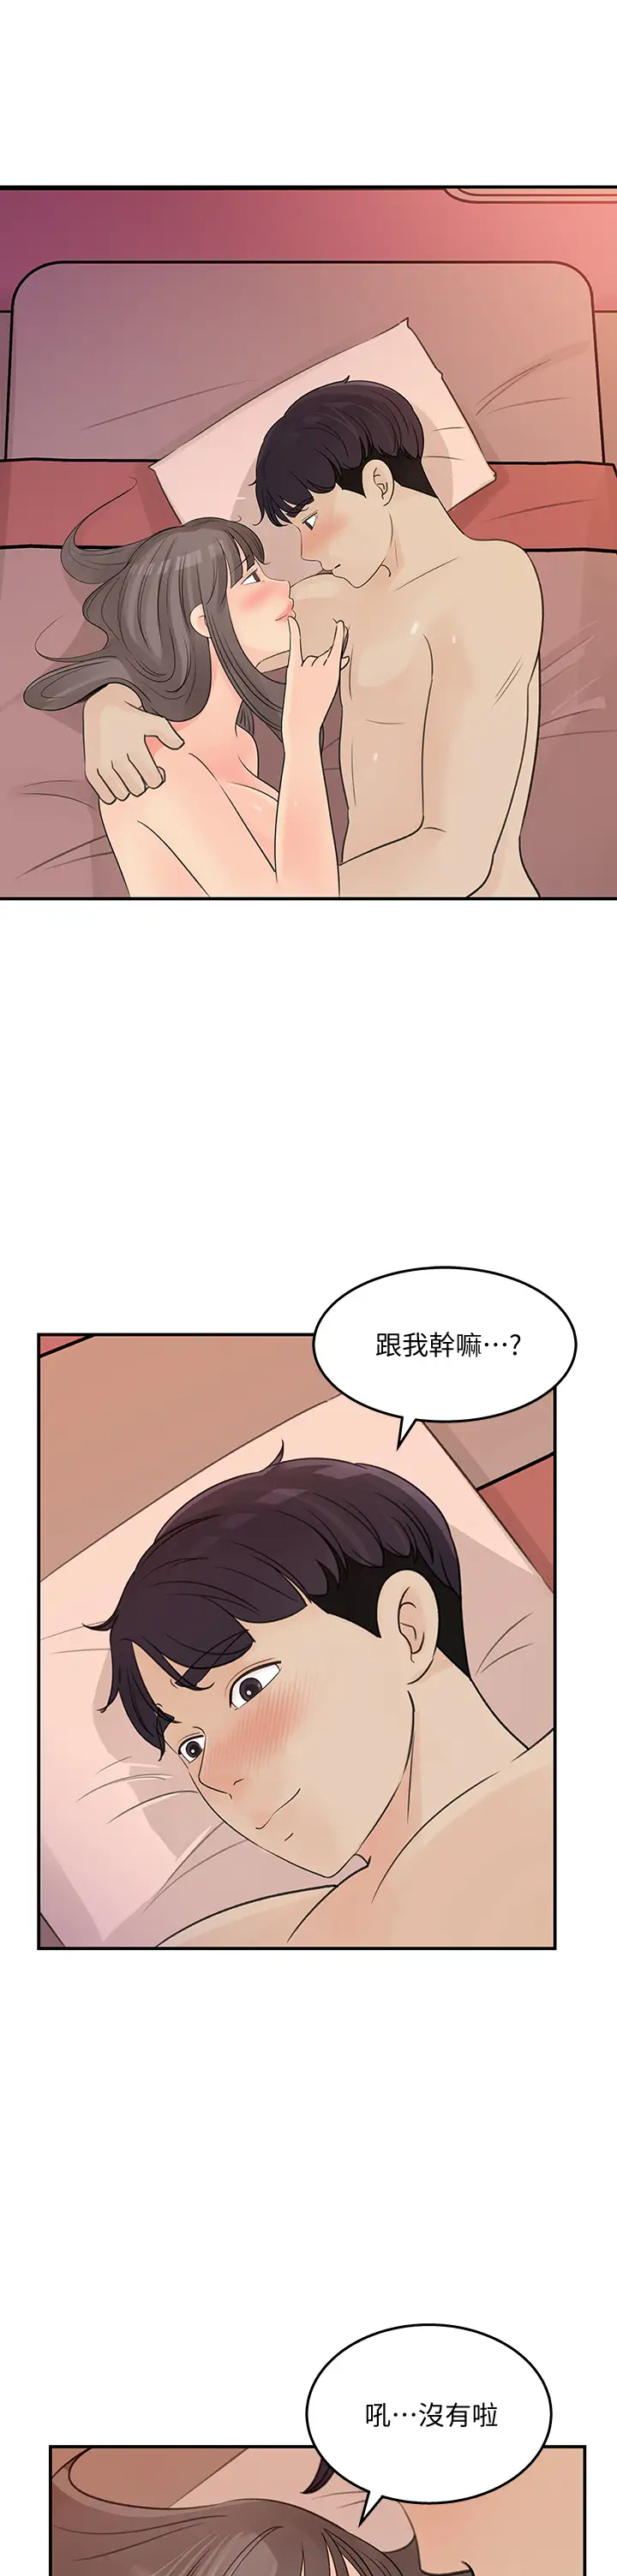 韩国污漫画 女神收藏清單 第31话你没有想我吗？ 7